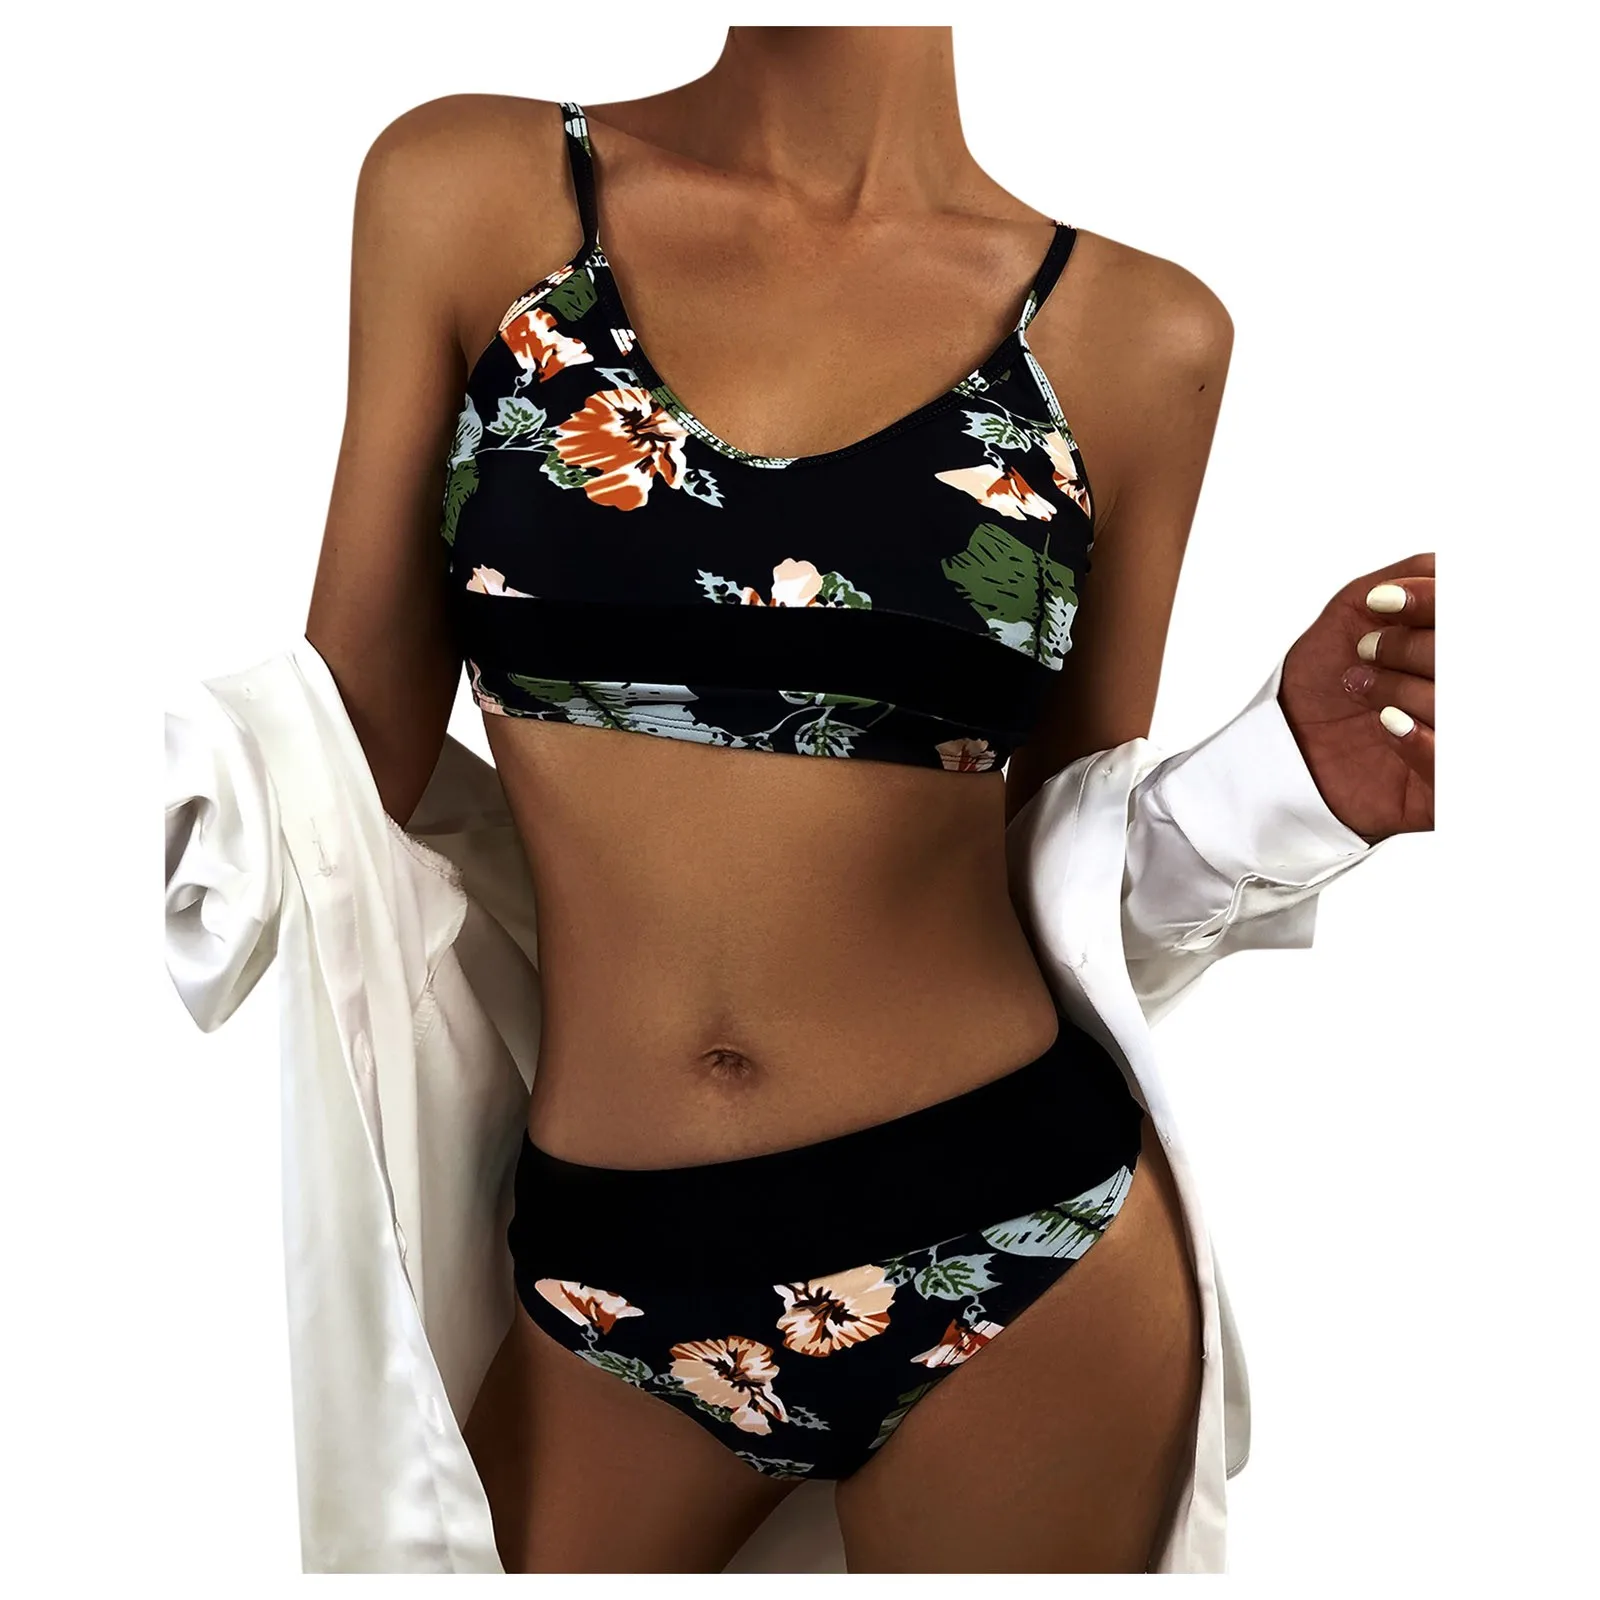 

Купальники Для женщин купальник сексуальный принт пуш-ап микро бикини комплект плавательный ванный комплект пляжная одежда Летний БИК 2021